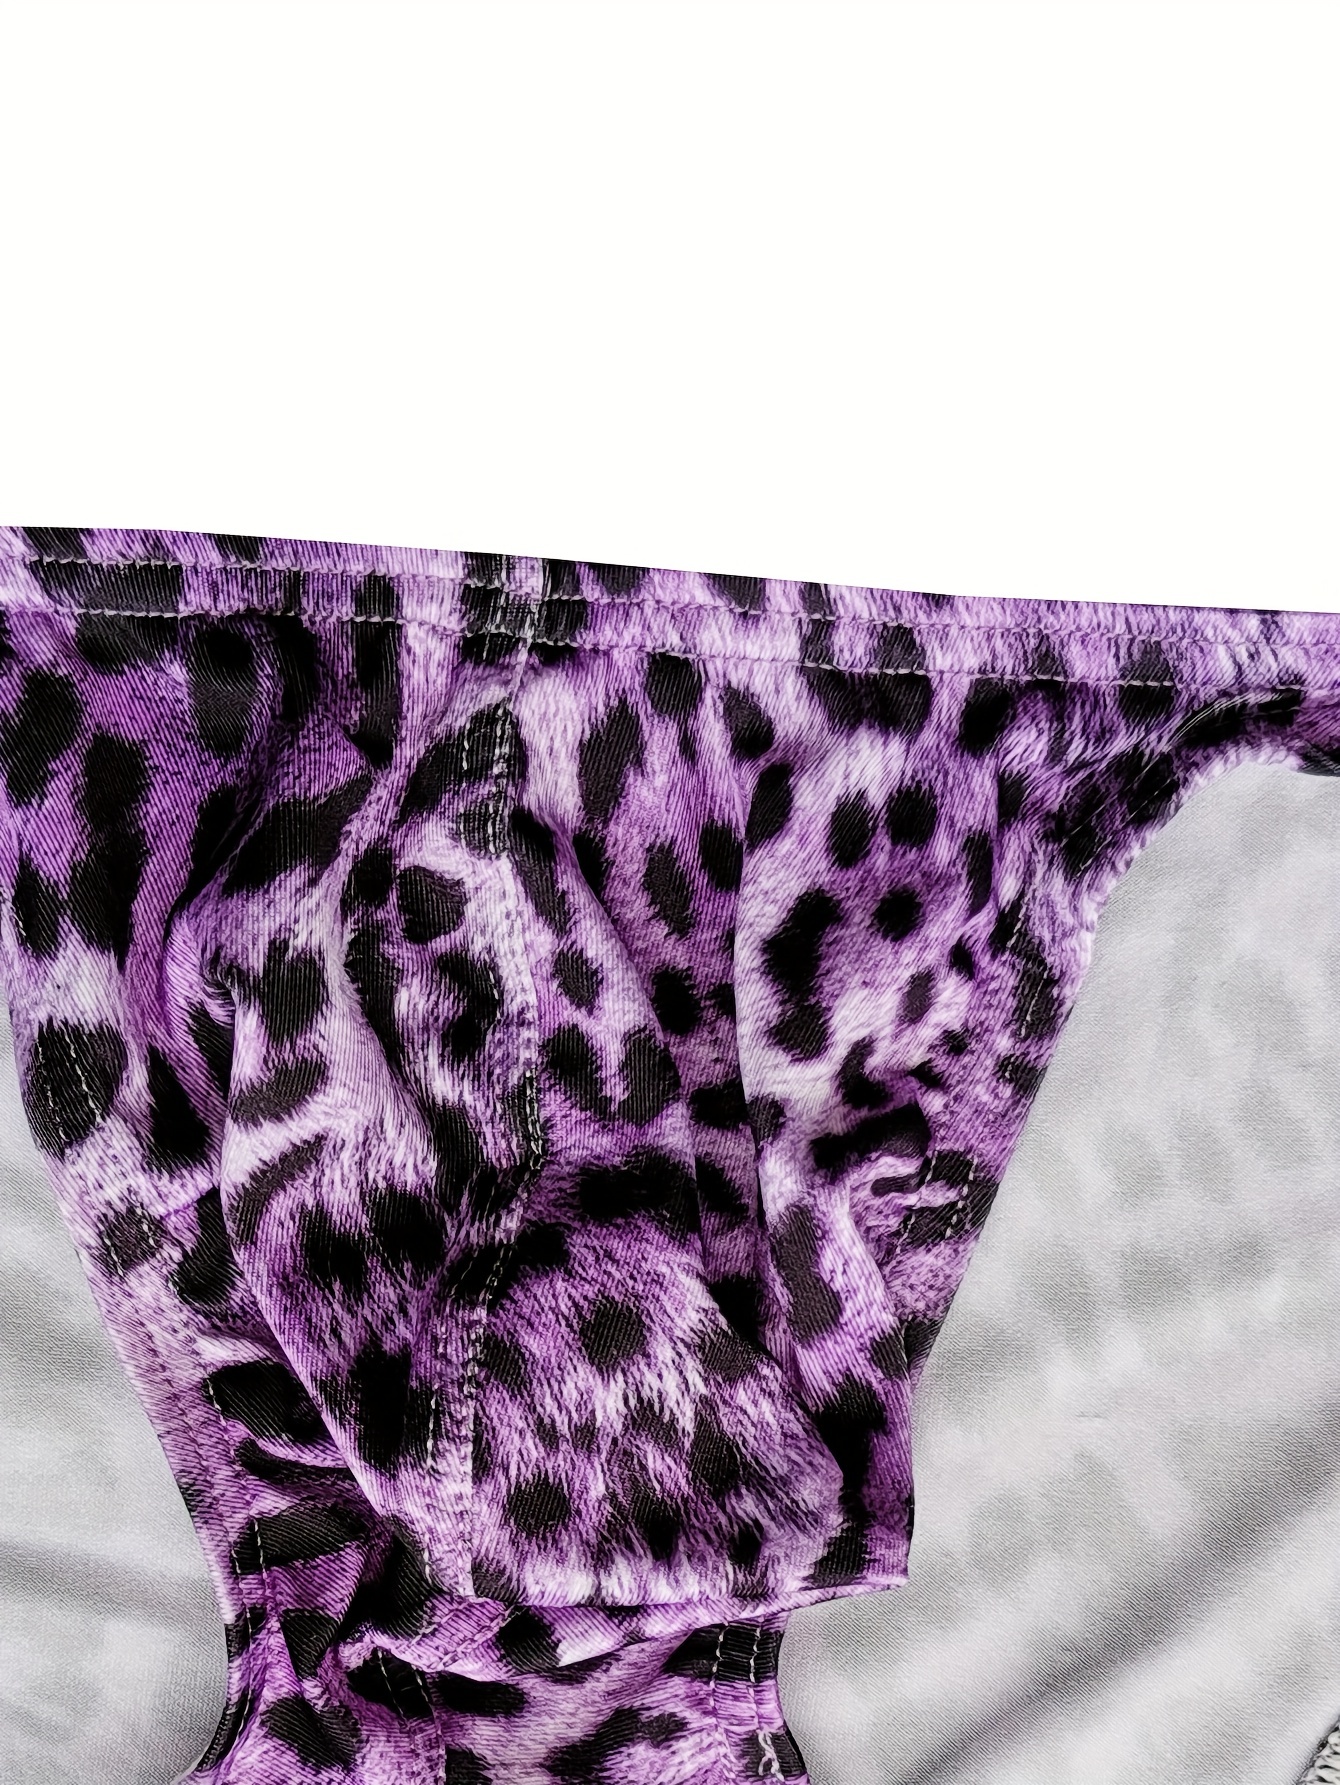 Animal Print Men's Underwear 